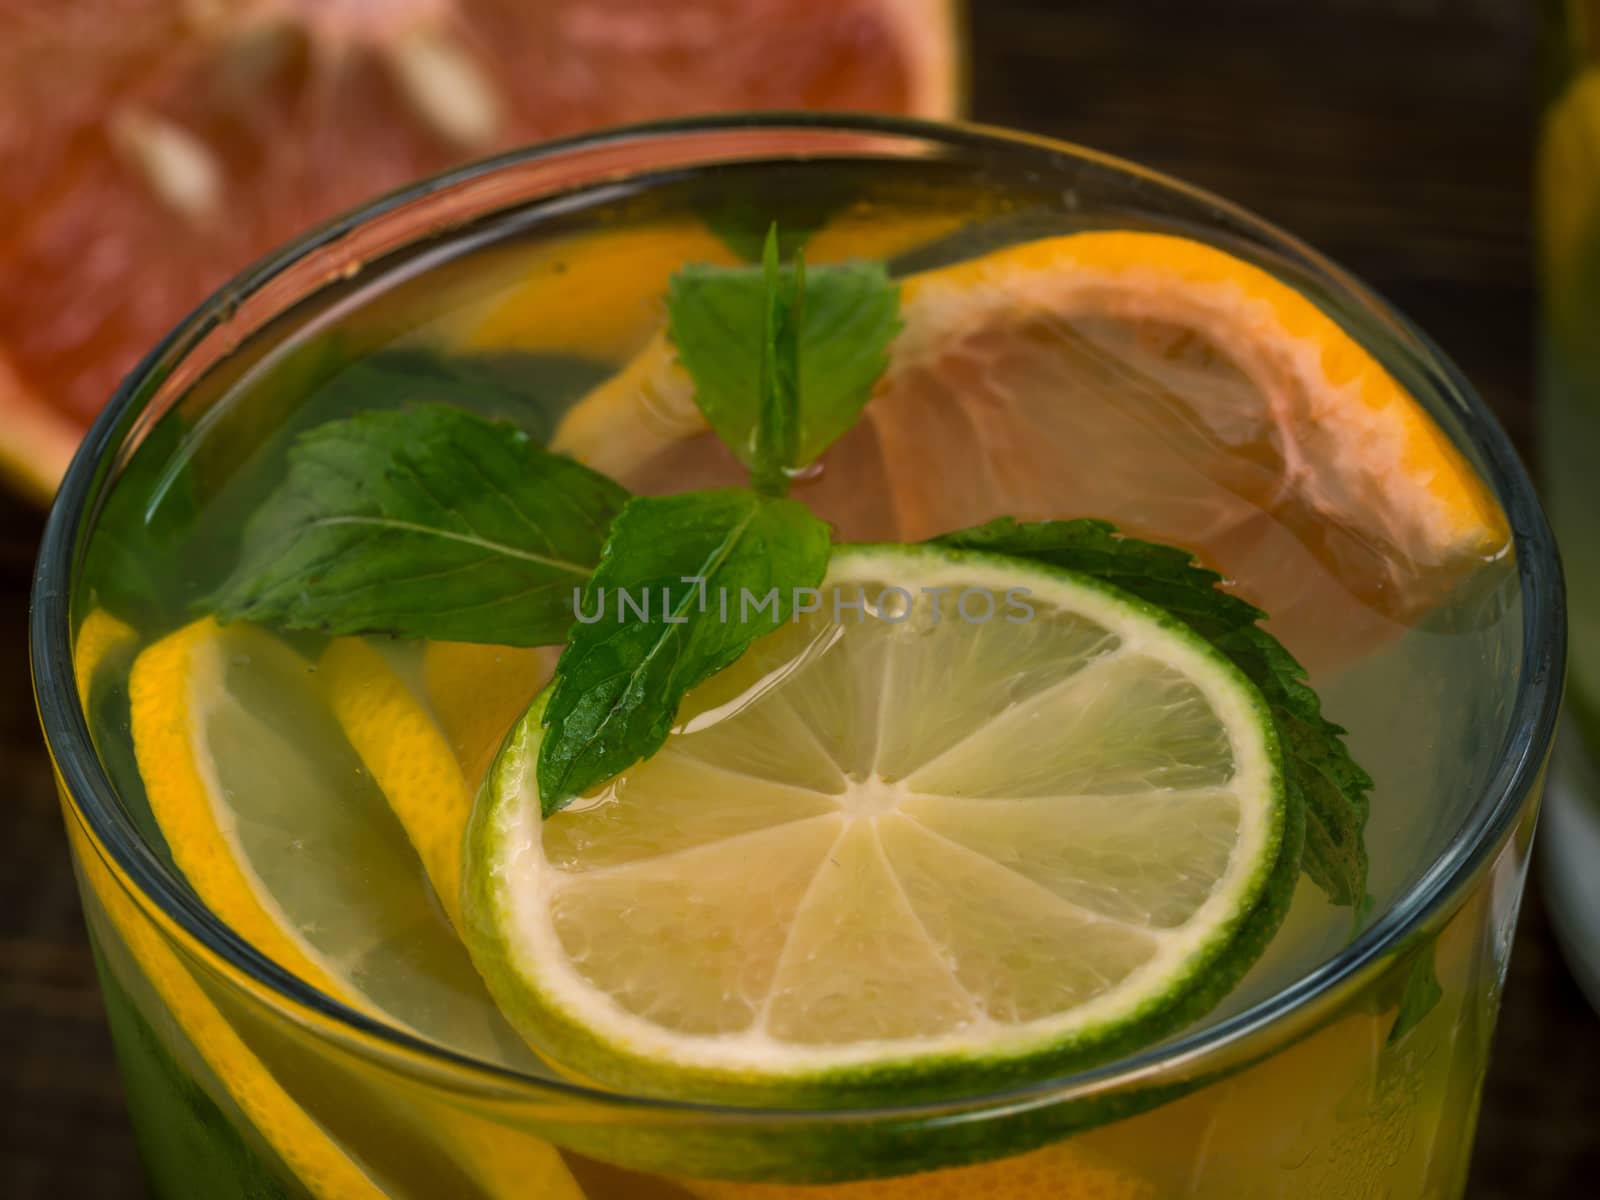 Citrus homemade lemonade, summer drink by fascinadora